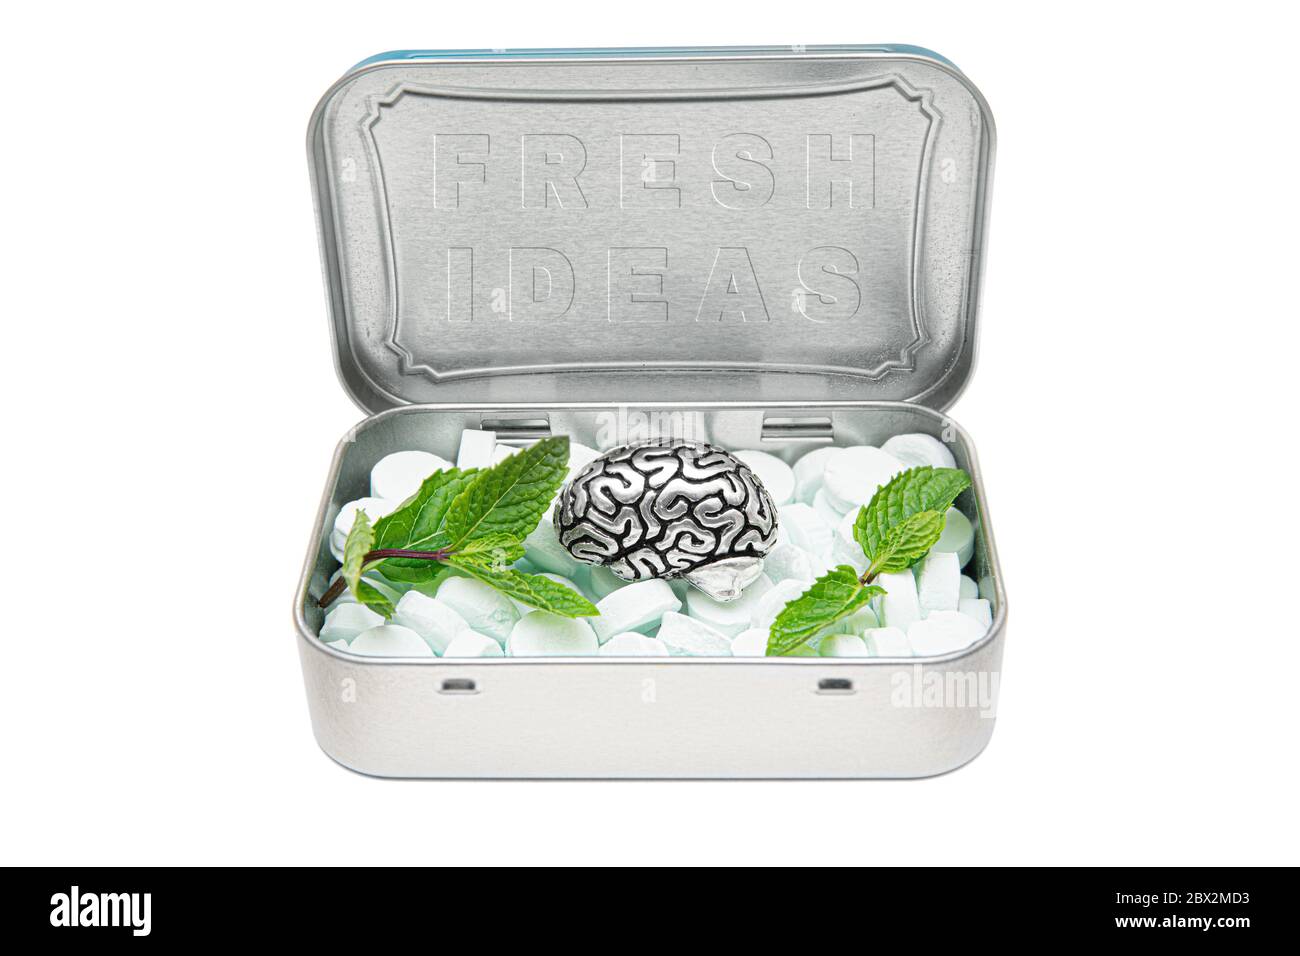 Boîte de conserve pleine de menthe à souffle, une copie en acier du cerveau humain et des feuilles de menthe verte, représentant un riche réservoir d'idées fraîches. Concept créatif de kee Banque D'Images